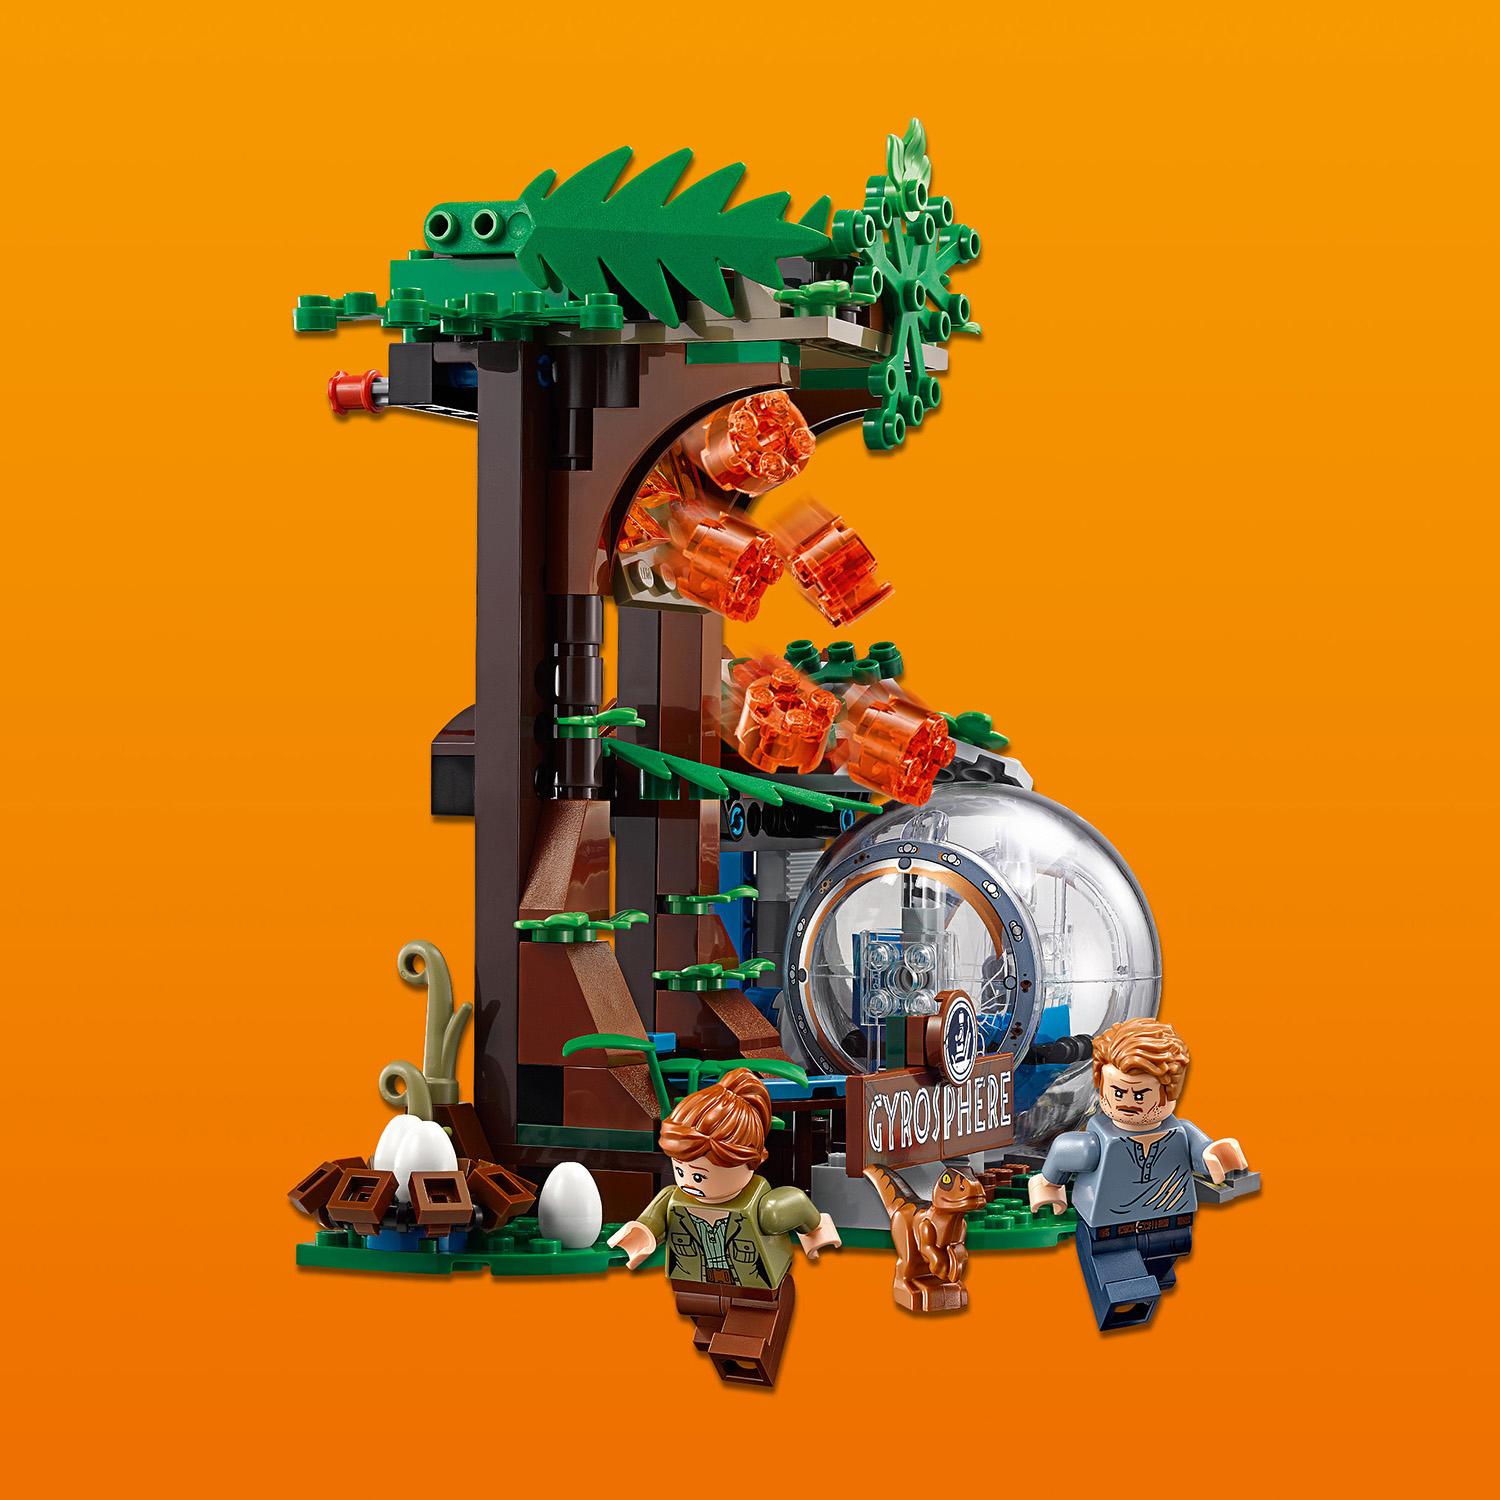 Конструктор Lego Jurassic World – Побег в гиросфере от карнотавра  